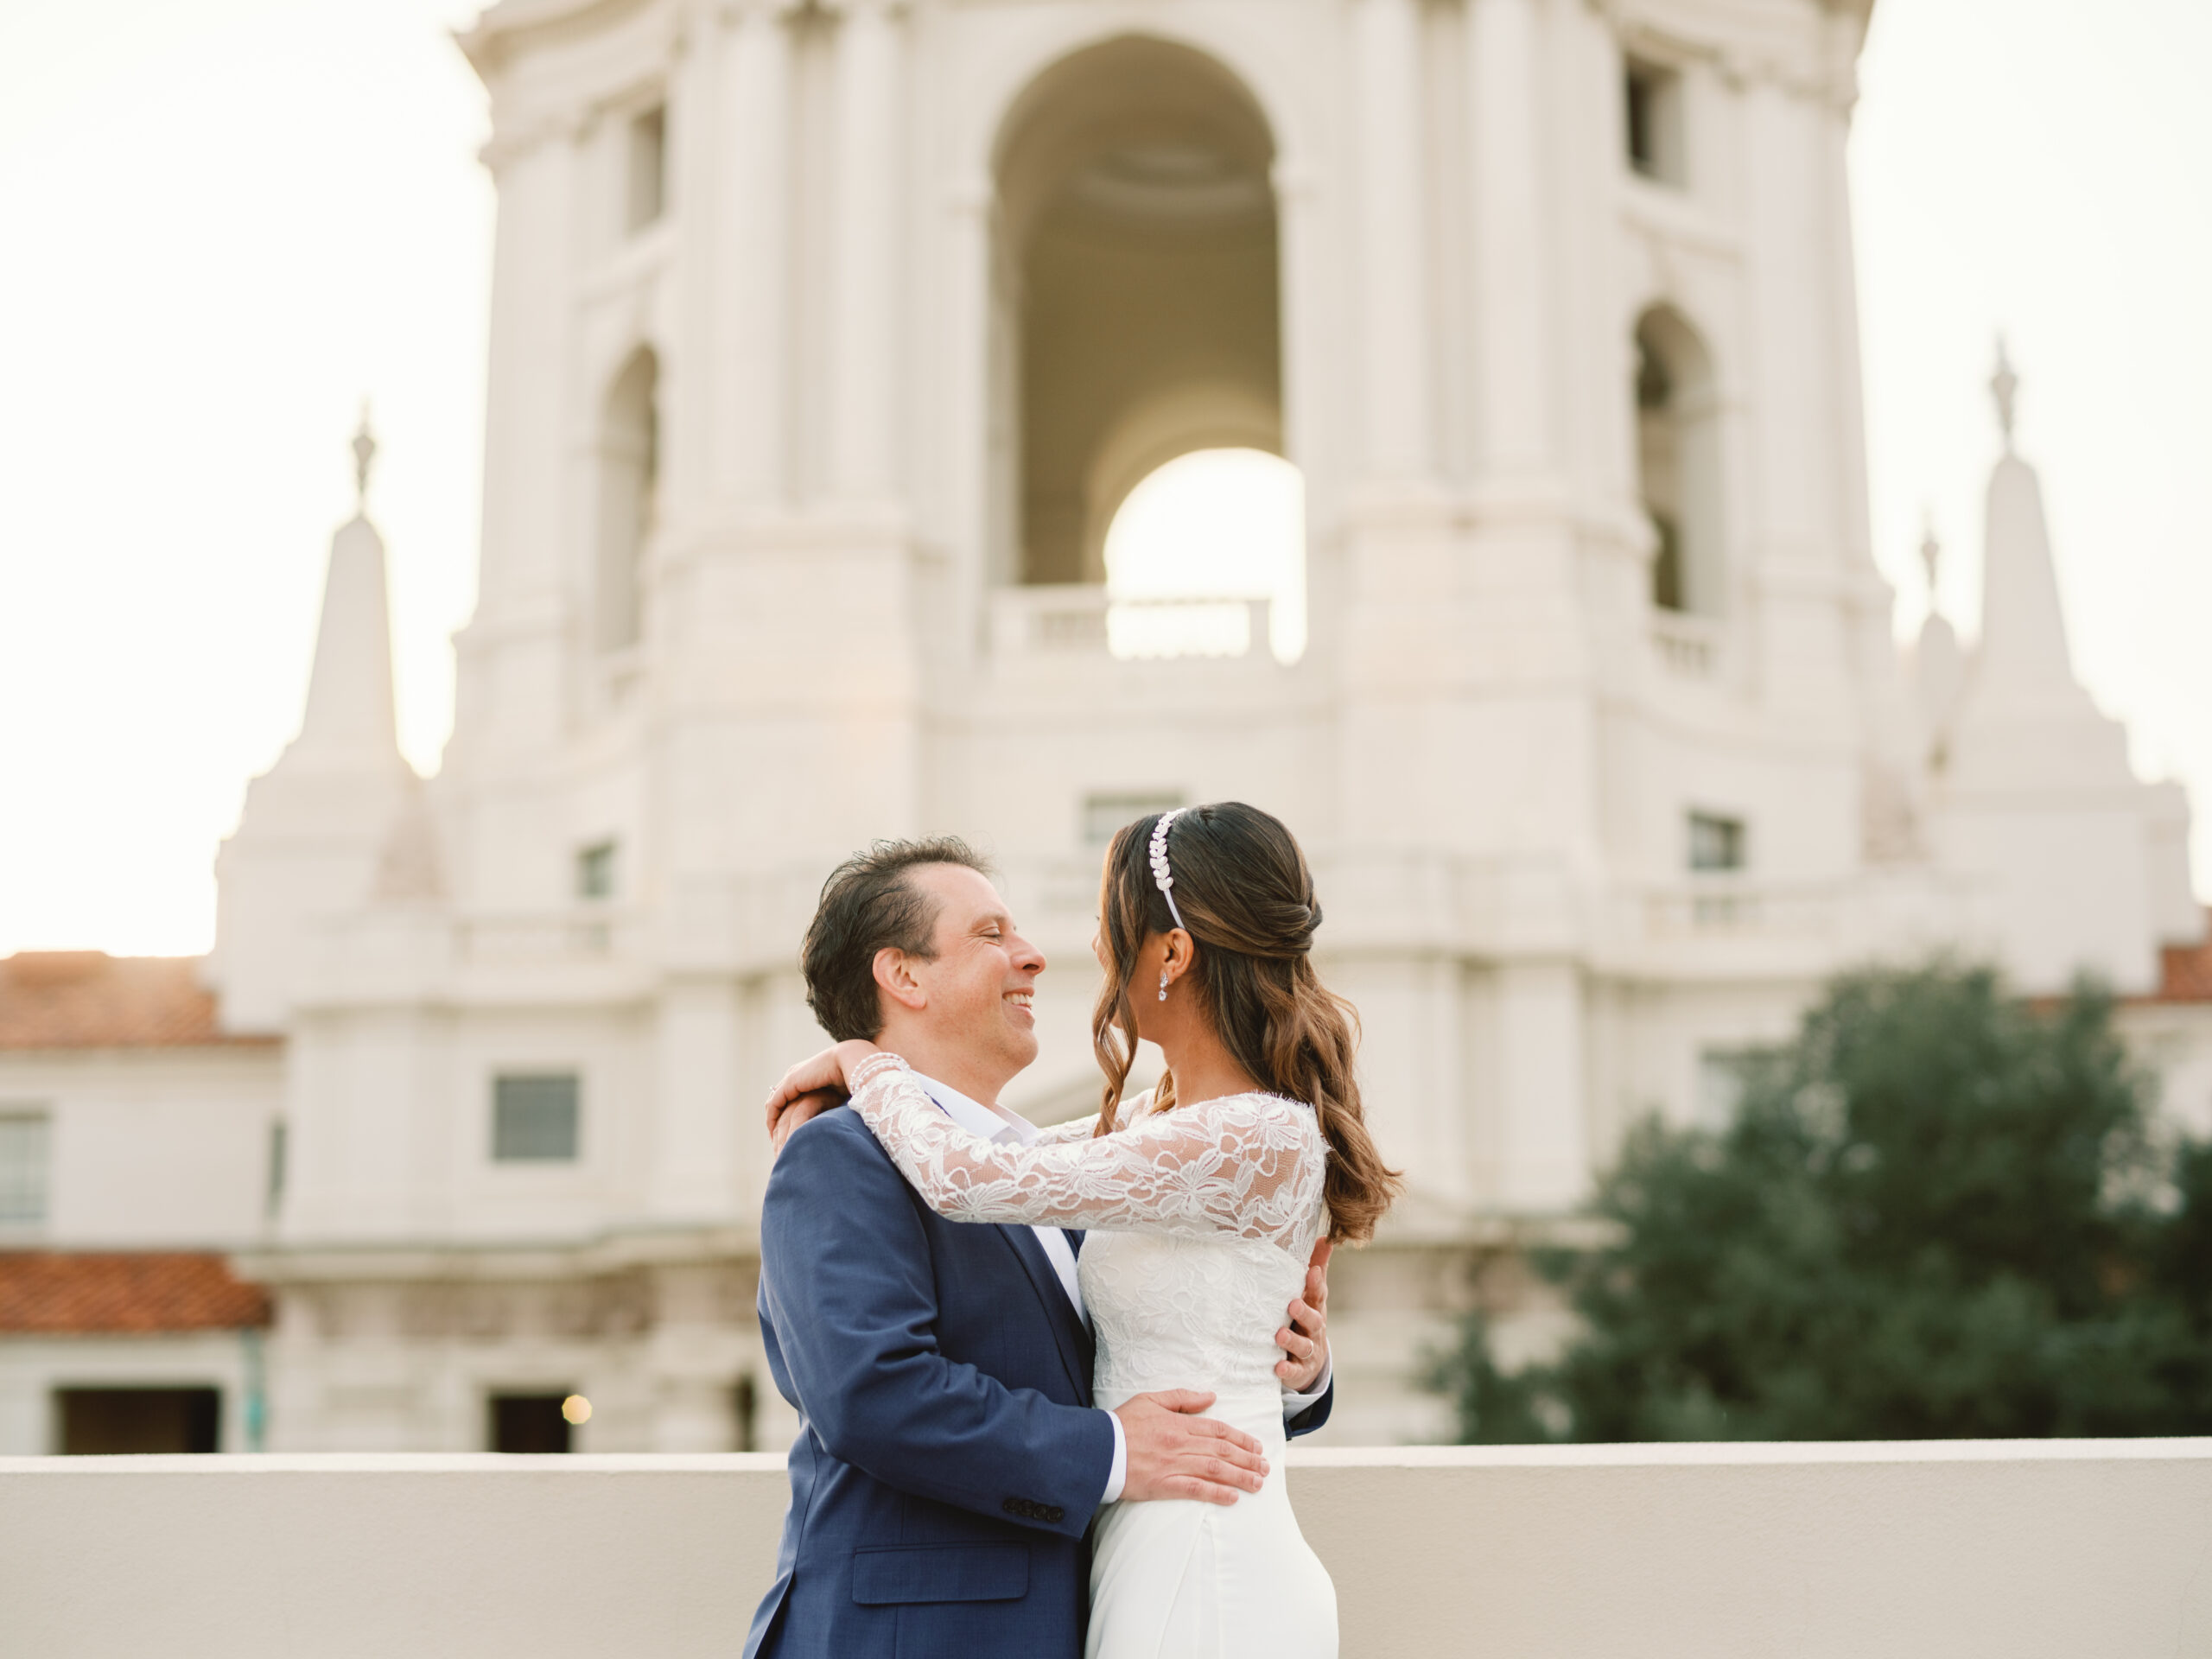 Pasadena City Hall - Elopement - Wedding - Pasadena, California - Engagment - Couple Portrait